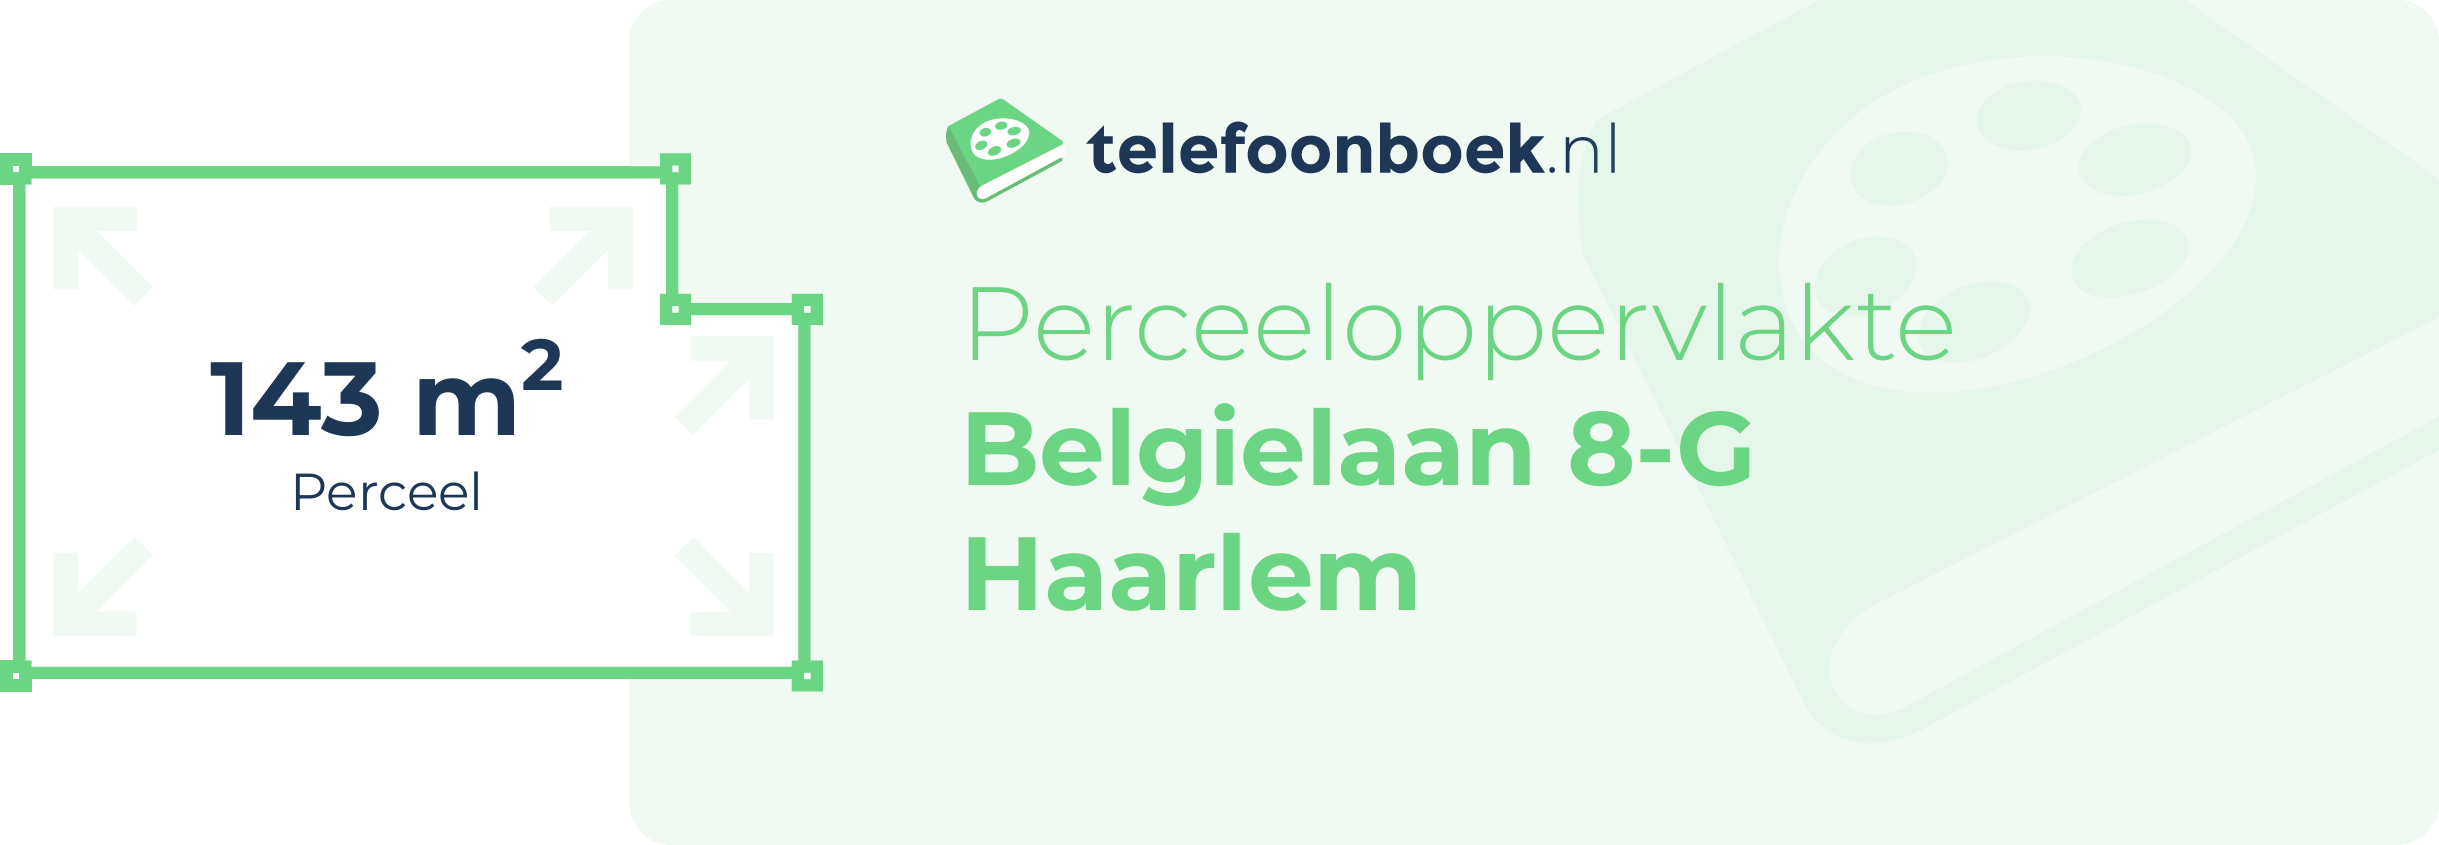 Perceeloppervlakte Belgielaan 8-G Haarlem